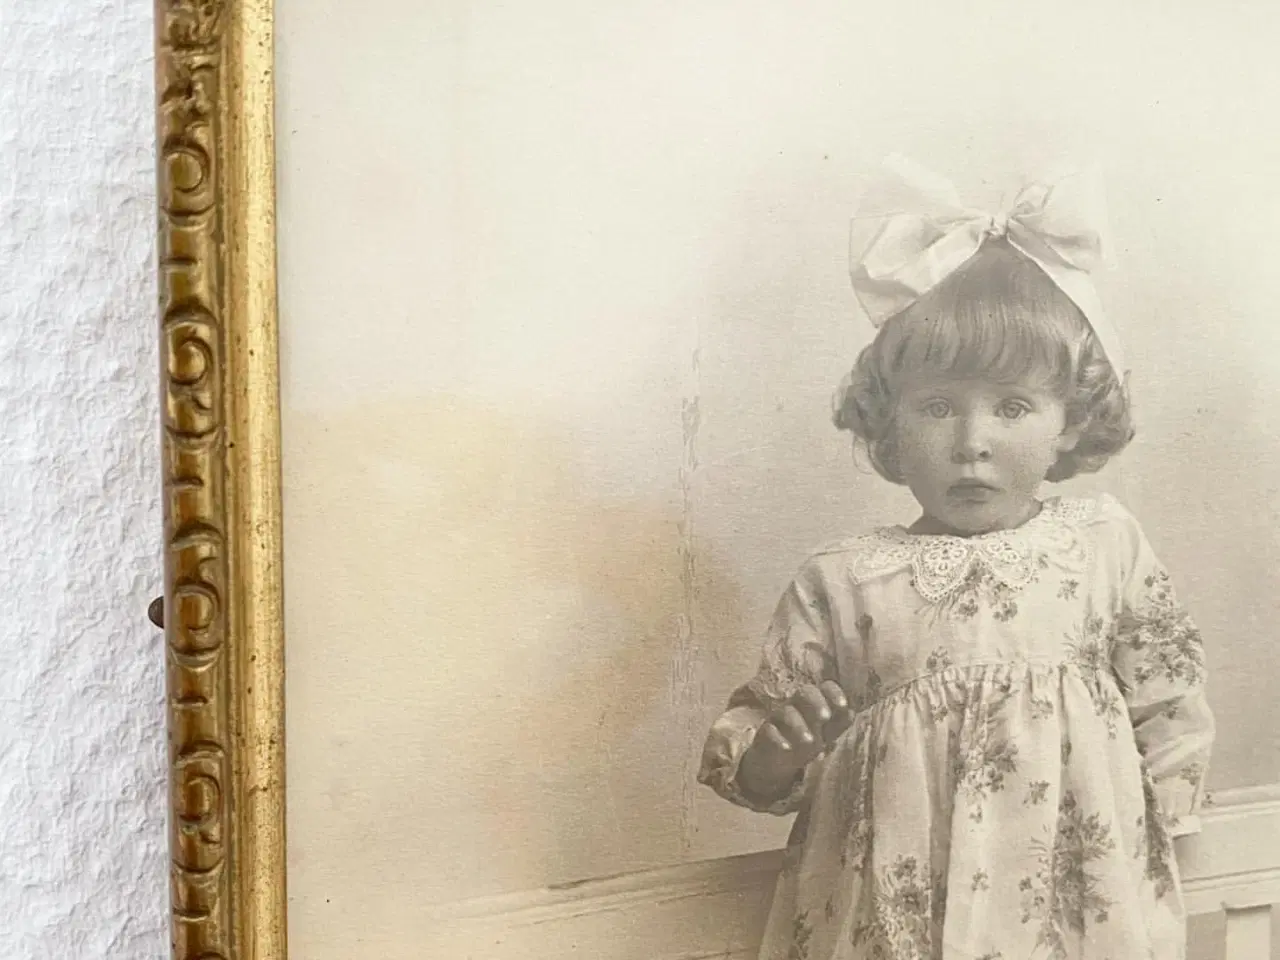 Billede 3 - Sort/hvid foto af lille pige i guldramme, dat. 1928